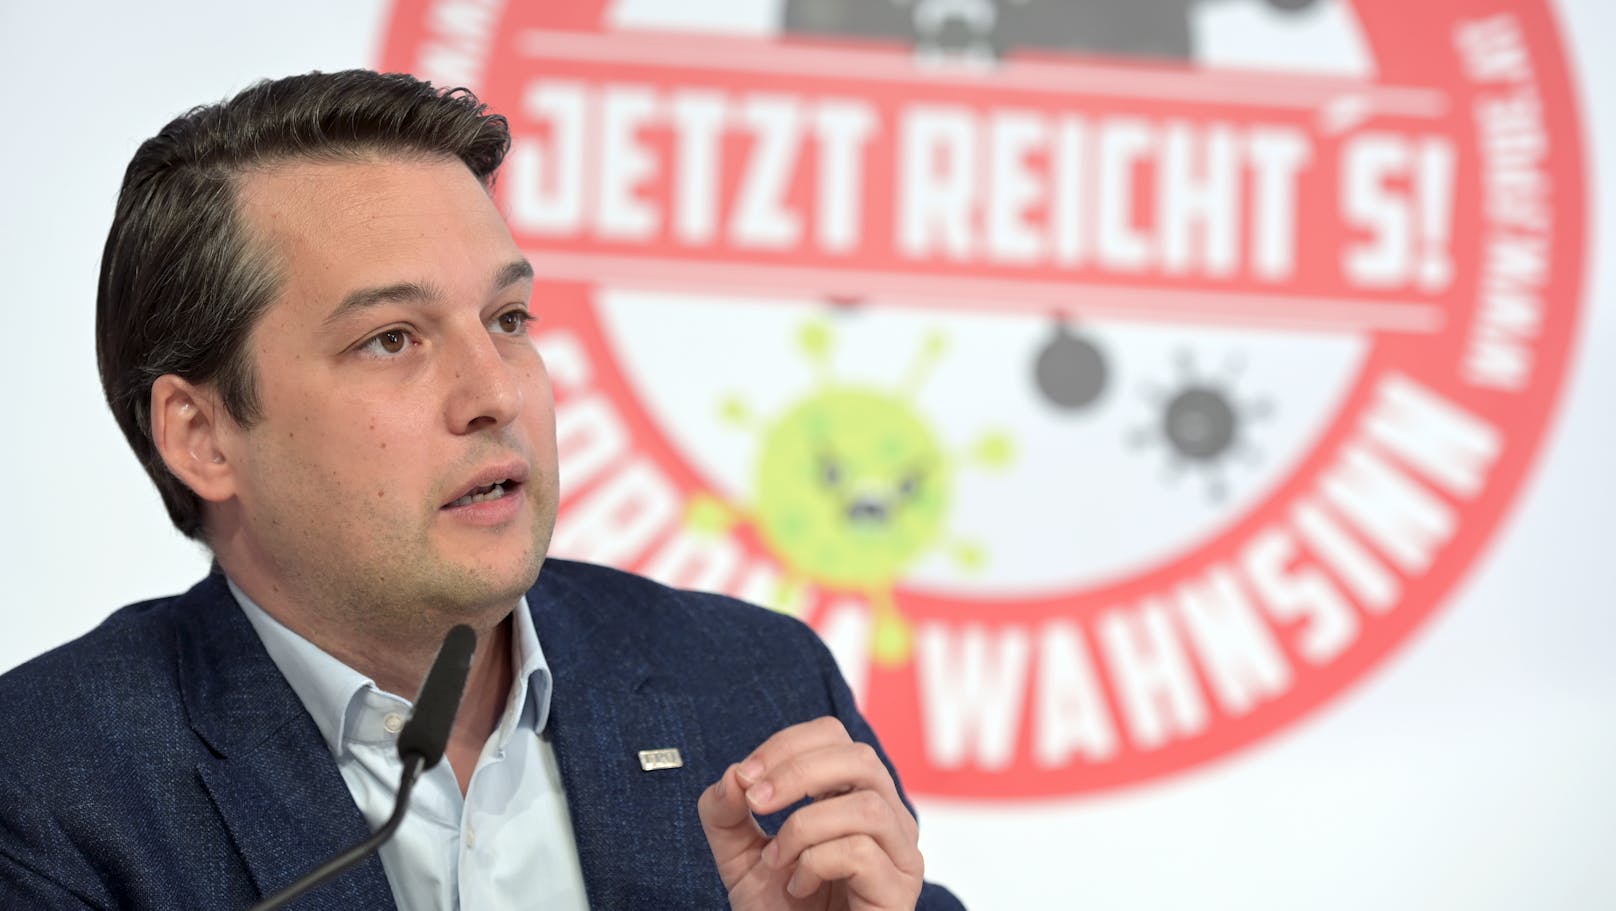 Der Wiener <b>FPÖ-Landeschef Dominik Nepp</b> kommt sicher in den Gemeinderat. Es droht aber ein massiver Stimmenverlust –&nbsp;von mehr als 30 Prozent im Jahr 2015 auf ein möglicherweise sogar einstelliges Ergebnis.